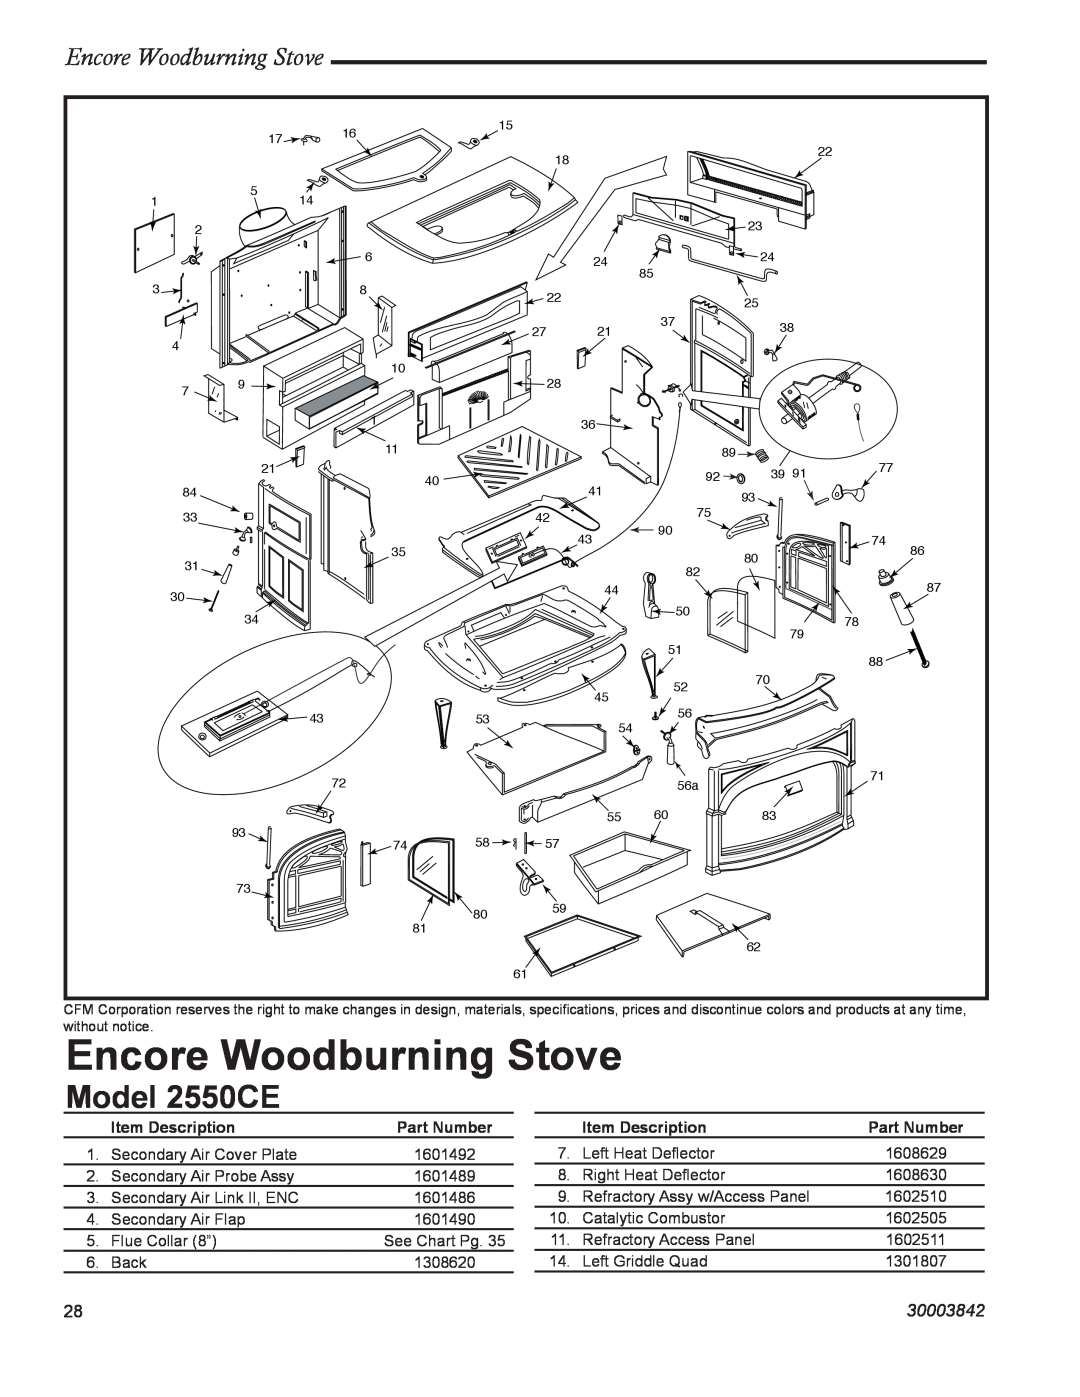 Vermont Casting Model 2550CE, Encore Woodburning Stove, 30003842, Item Description, Part Number 